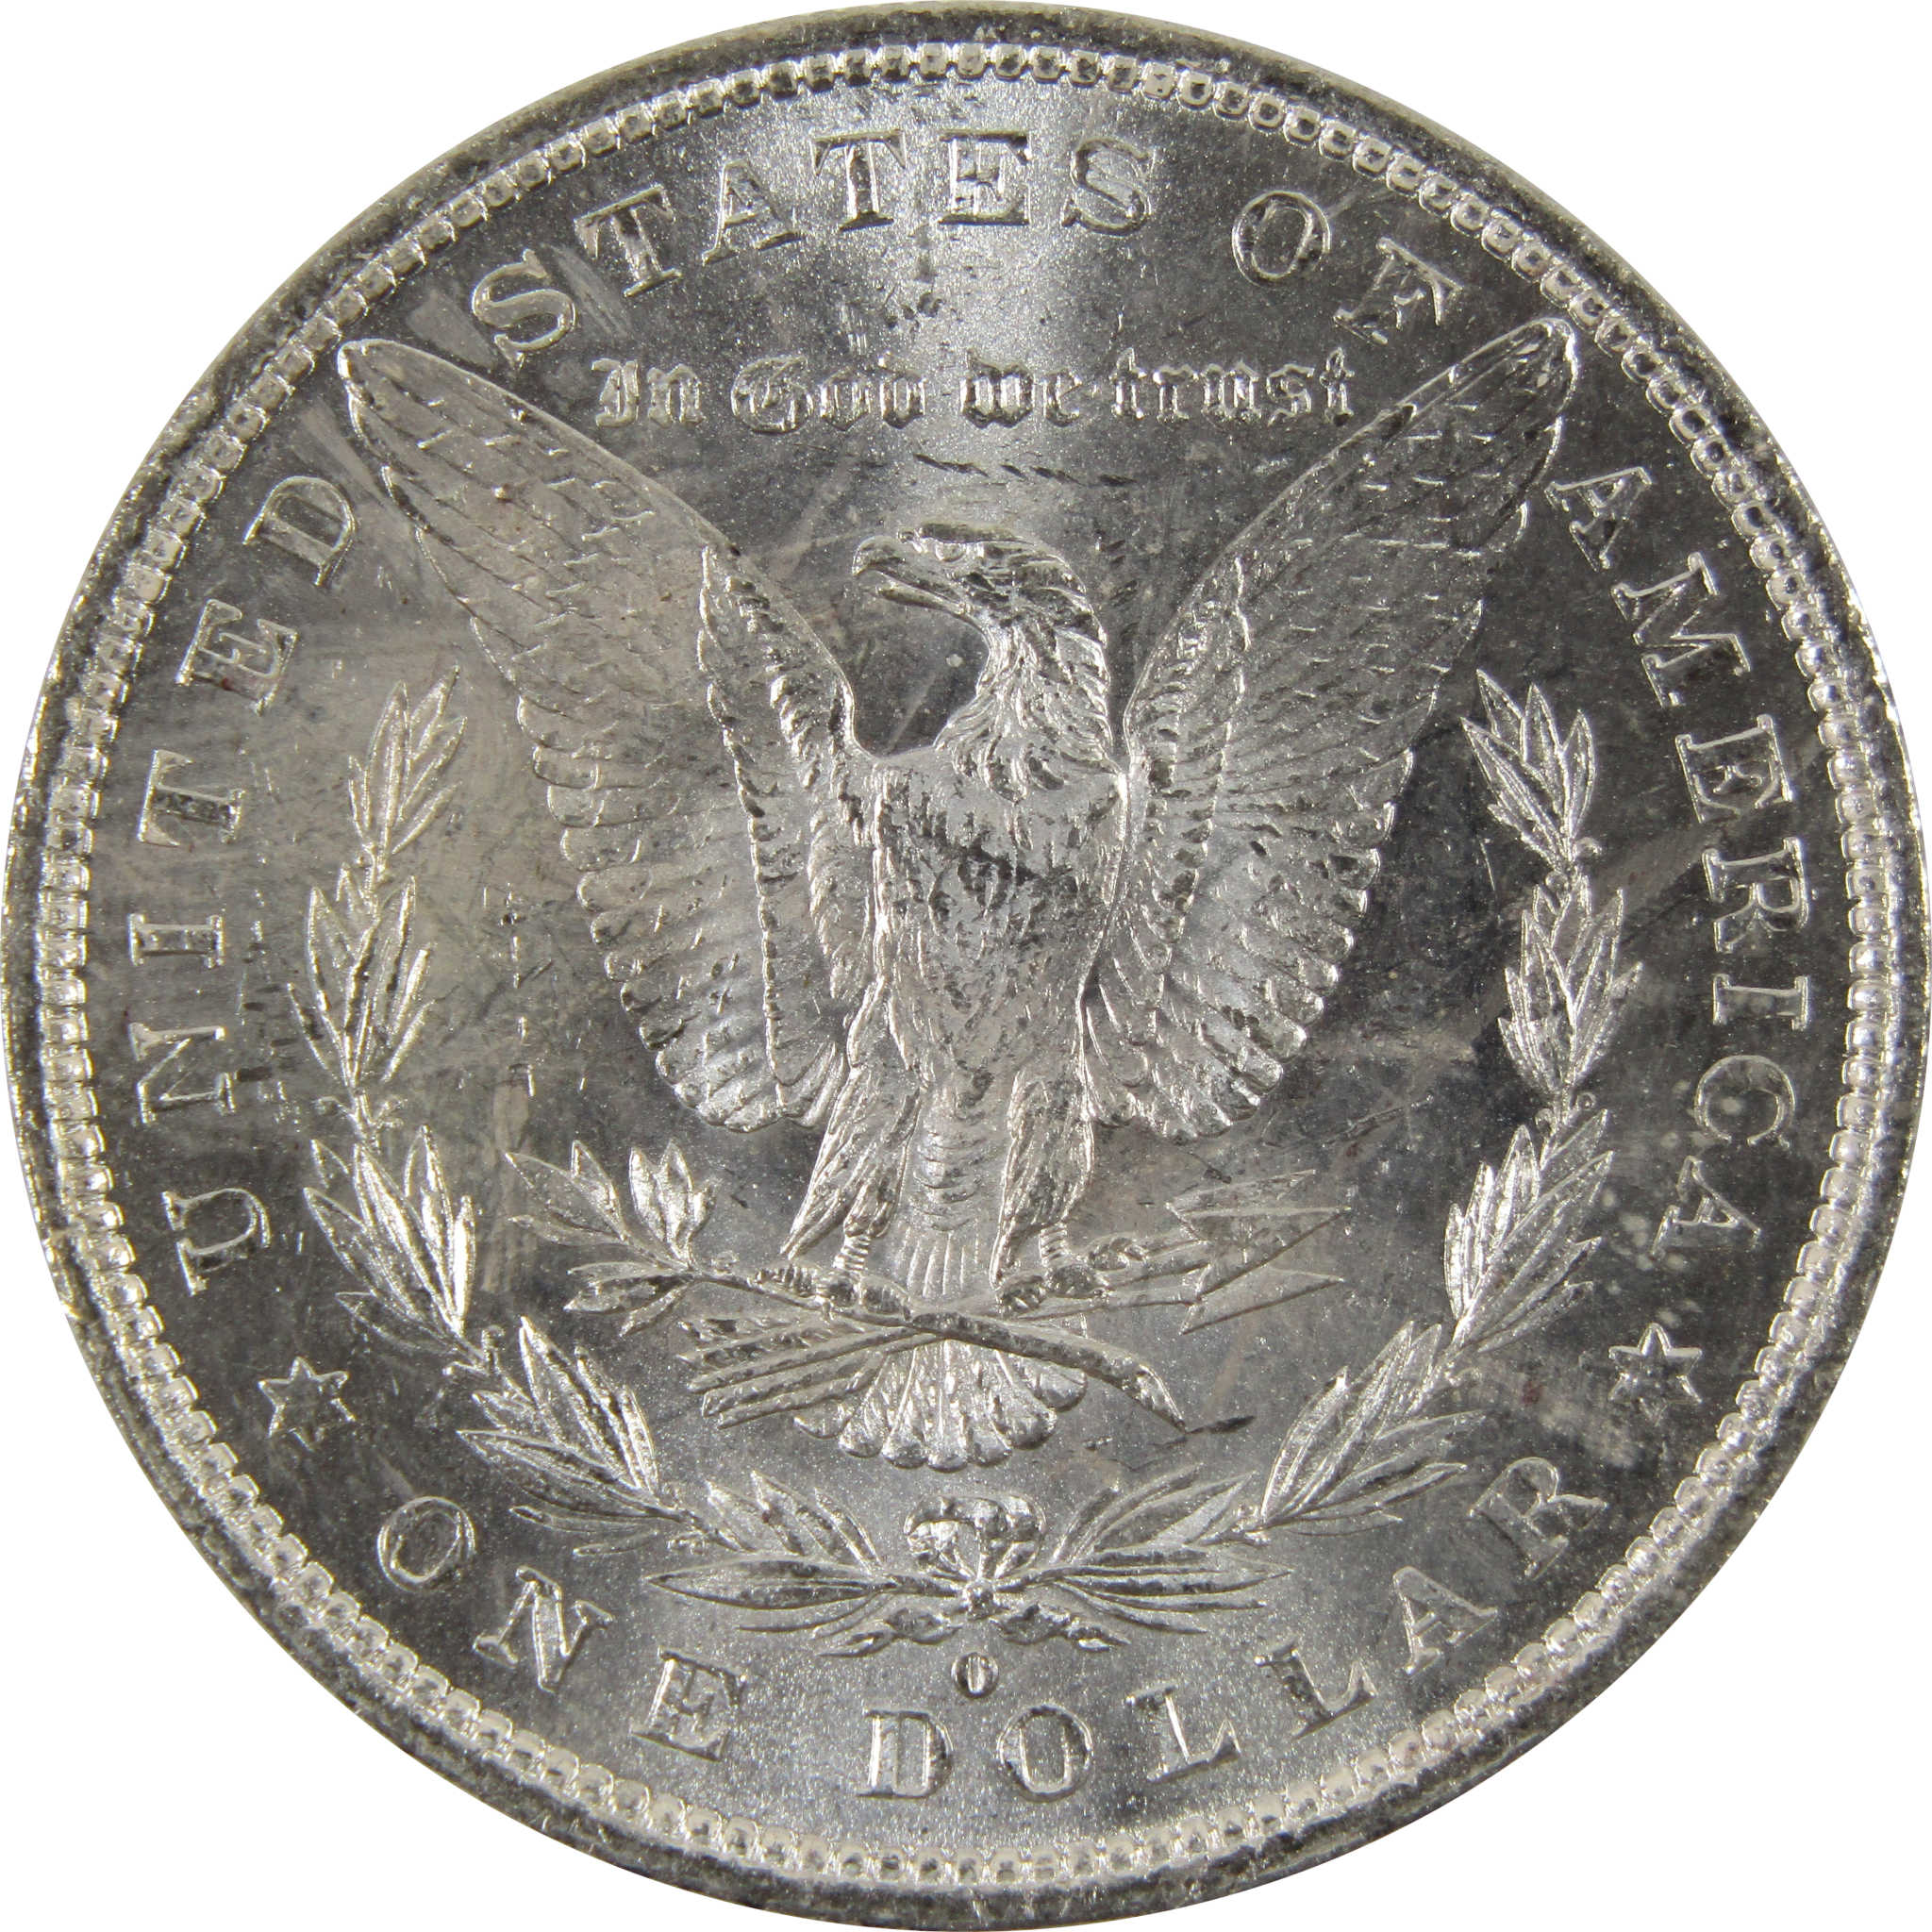 1882 O Morgan Dollar BU Uncirculated 90% Silver $1 Coin SKU:I8817 - Morgan coin - Morgan silver dollar - Morgan silver dollar for sale - Profile Coins &amp; Collectibles